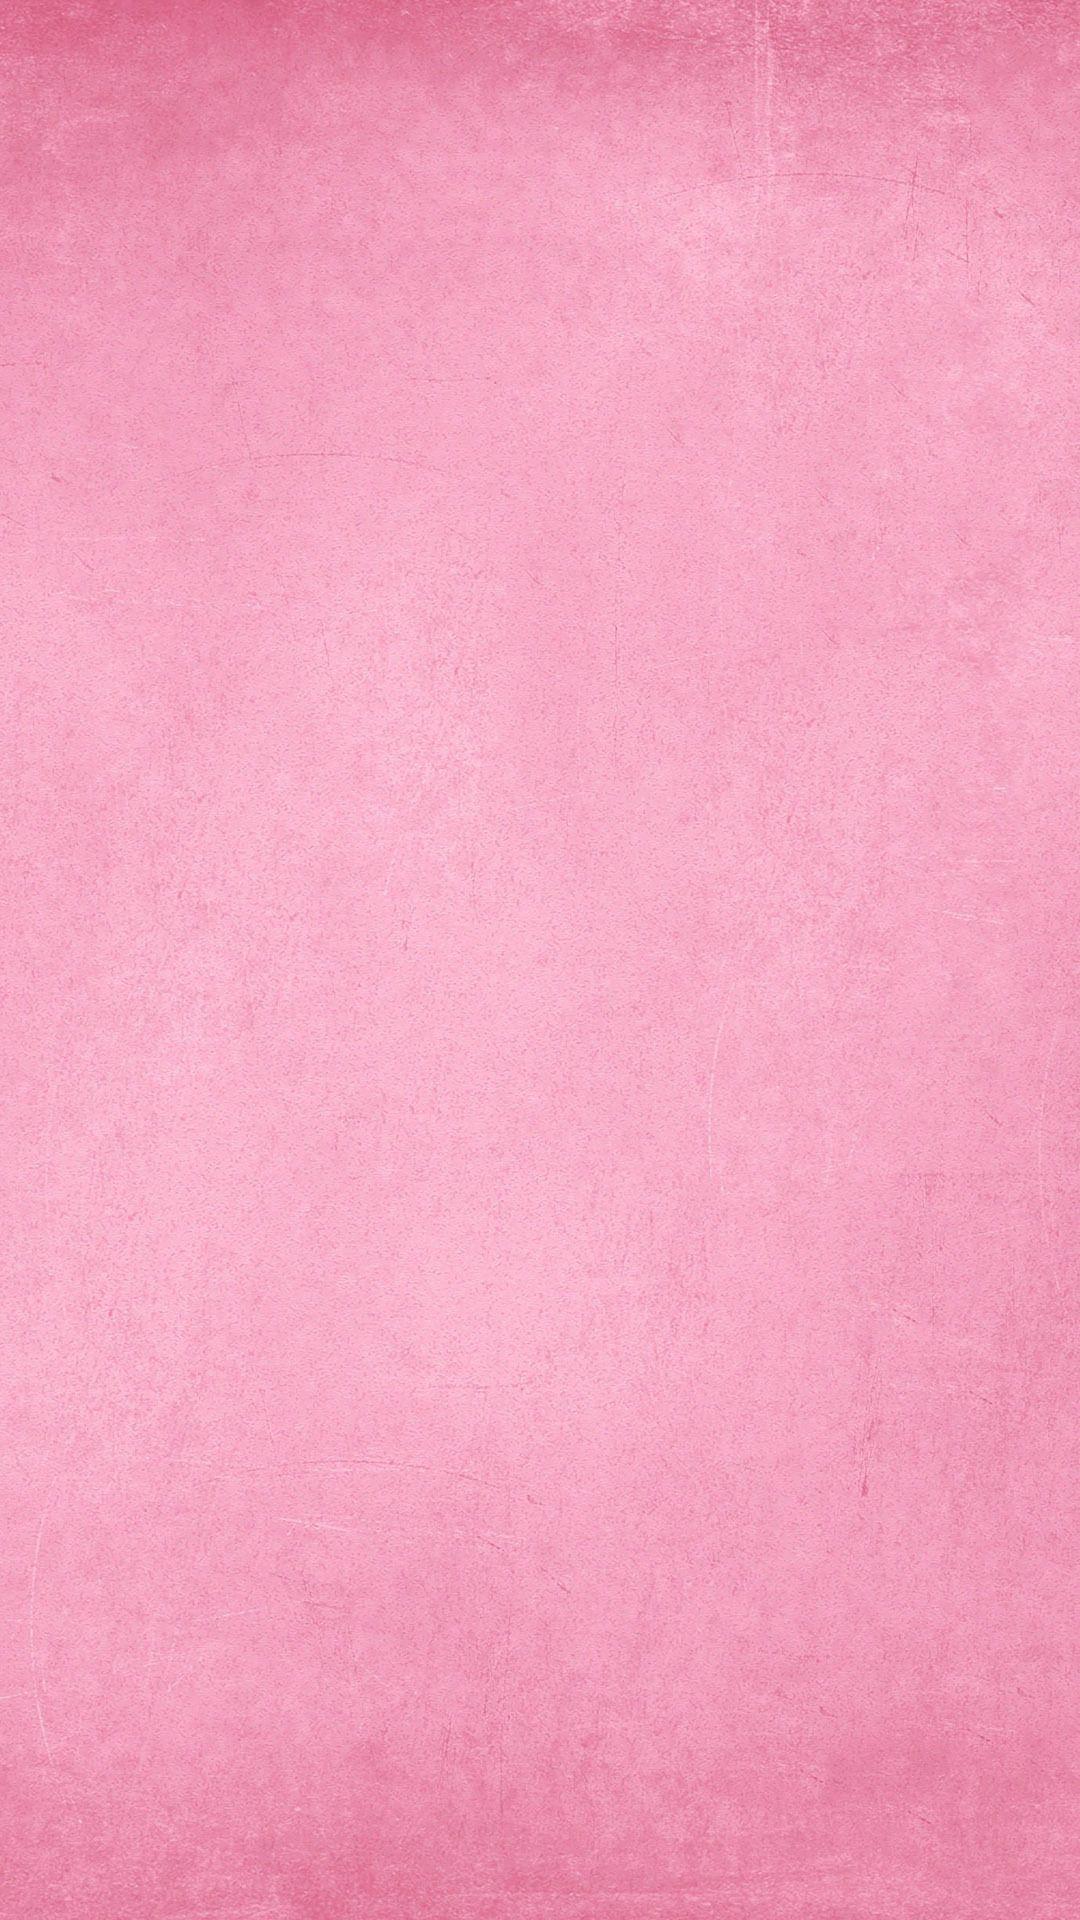 Những hình nền nghệ thuật màu hồng sẽ tạo nên sự kết hợp ấn tượng giữa màu sắc và tư duy nghệ thuật tuyệt vời. Bạn đang tìm kiếm những hình nền nghệ thuật màu hồng để thêm vào không gian sống của mình? Hãy ghé thăm các hình ảnh nền màu hồng nghệ thuật độc đáo được chúng tôi cung cấp.